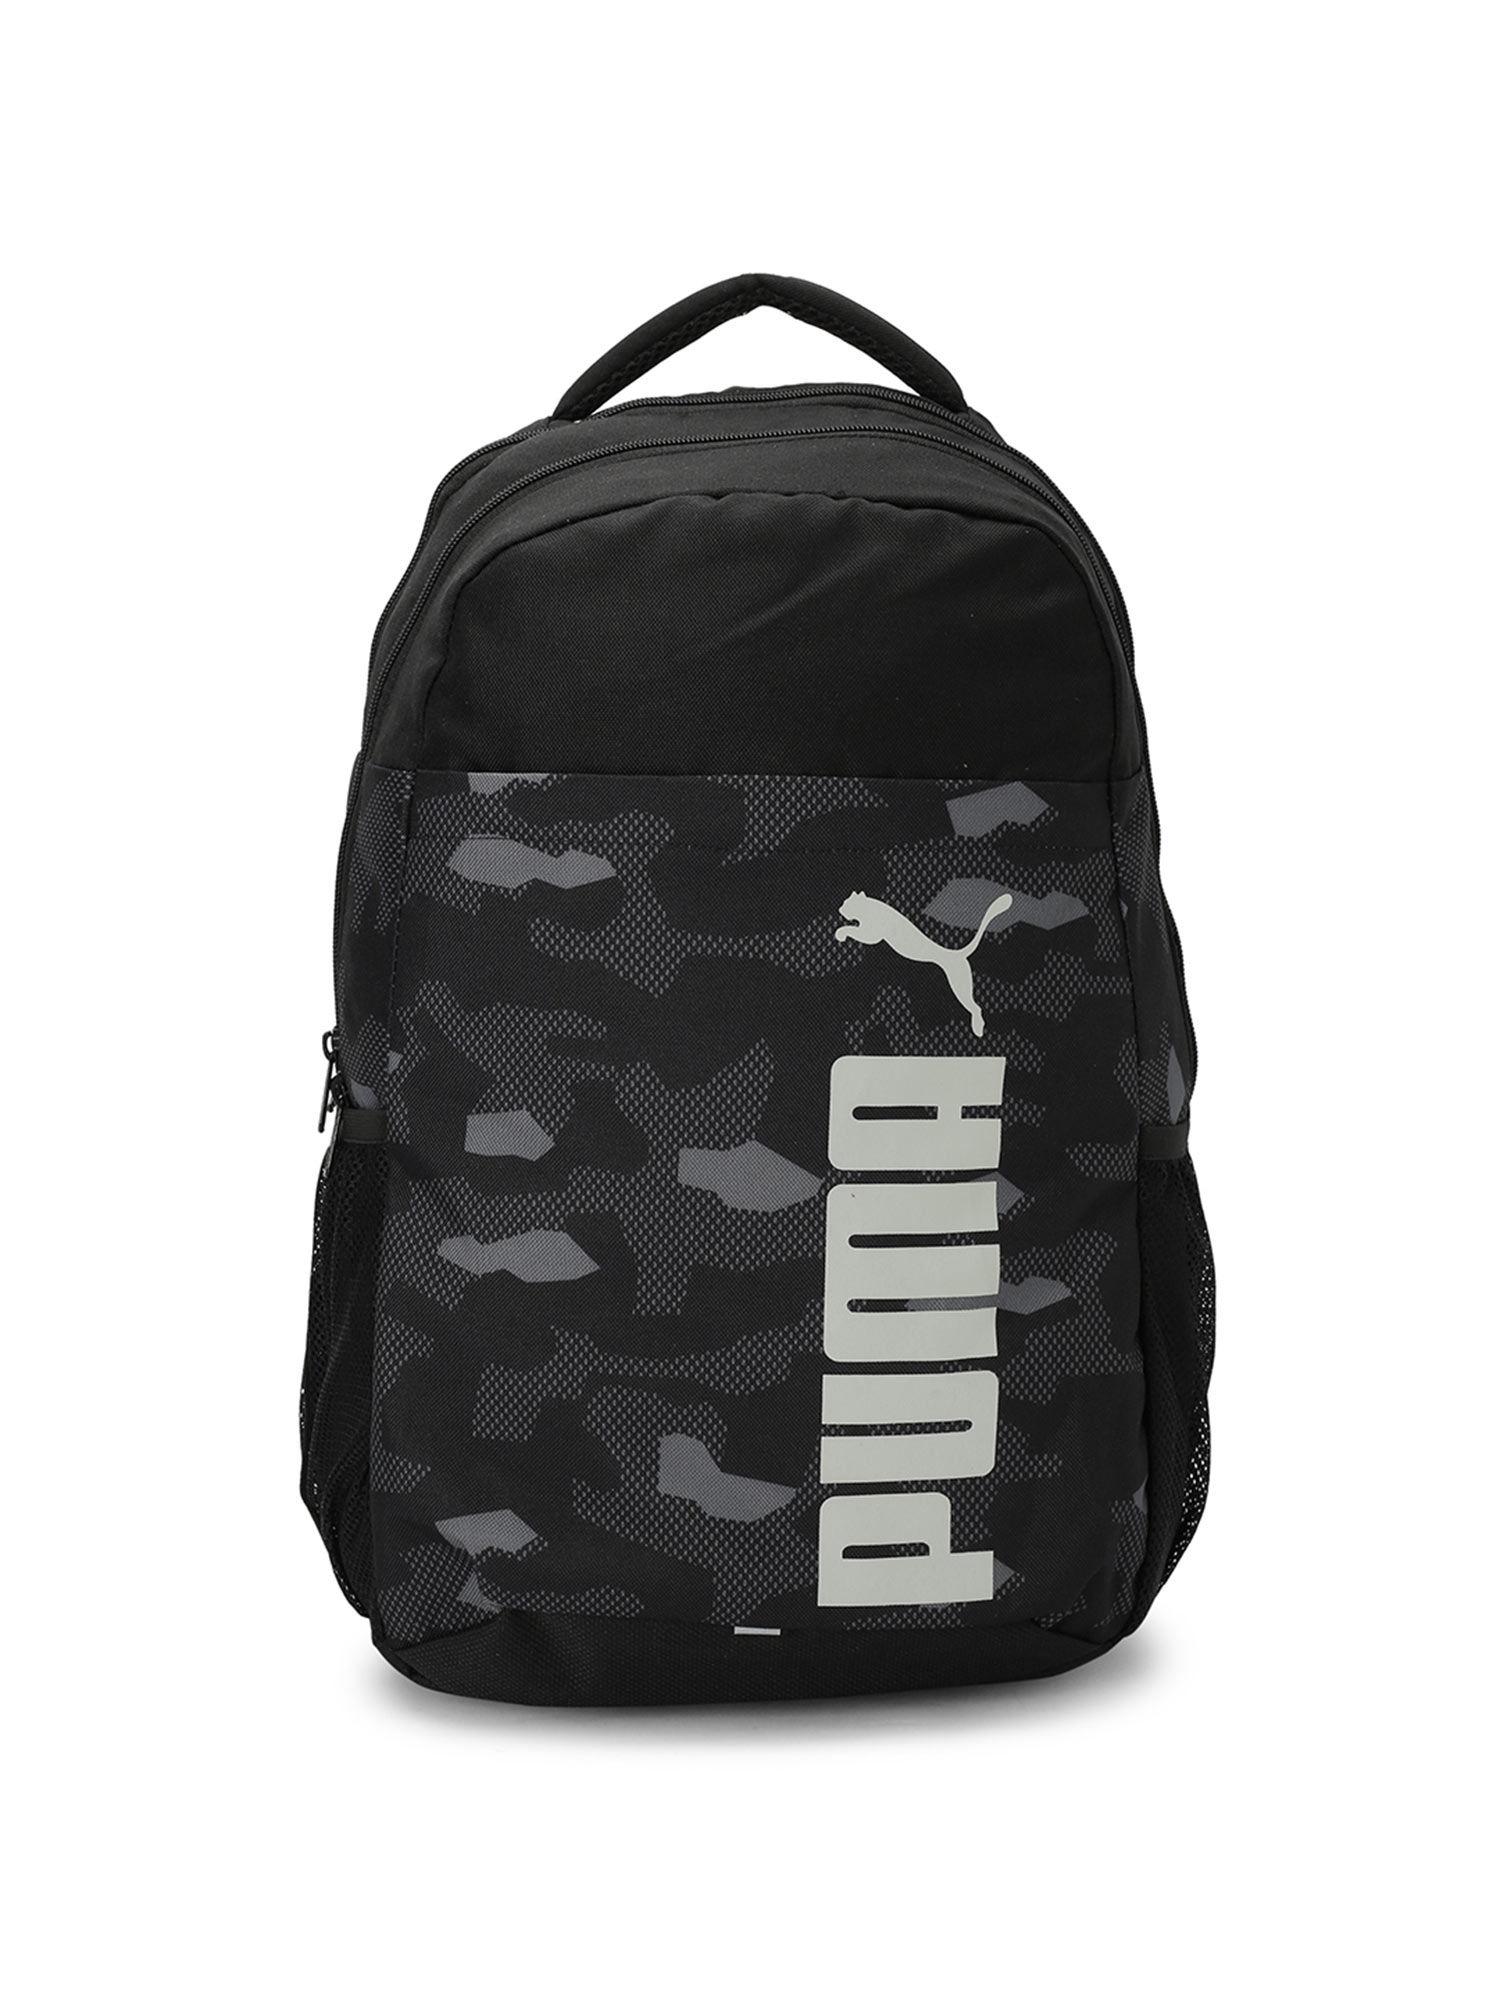 style-black-backpack-ind